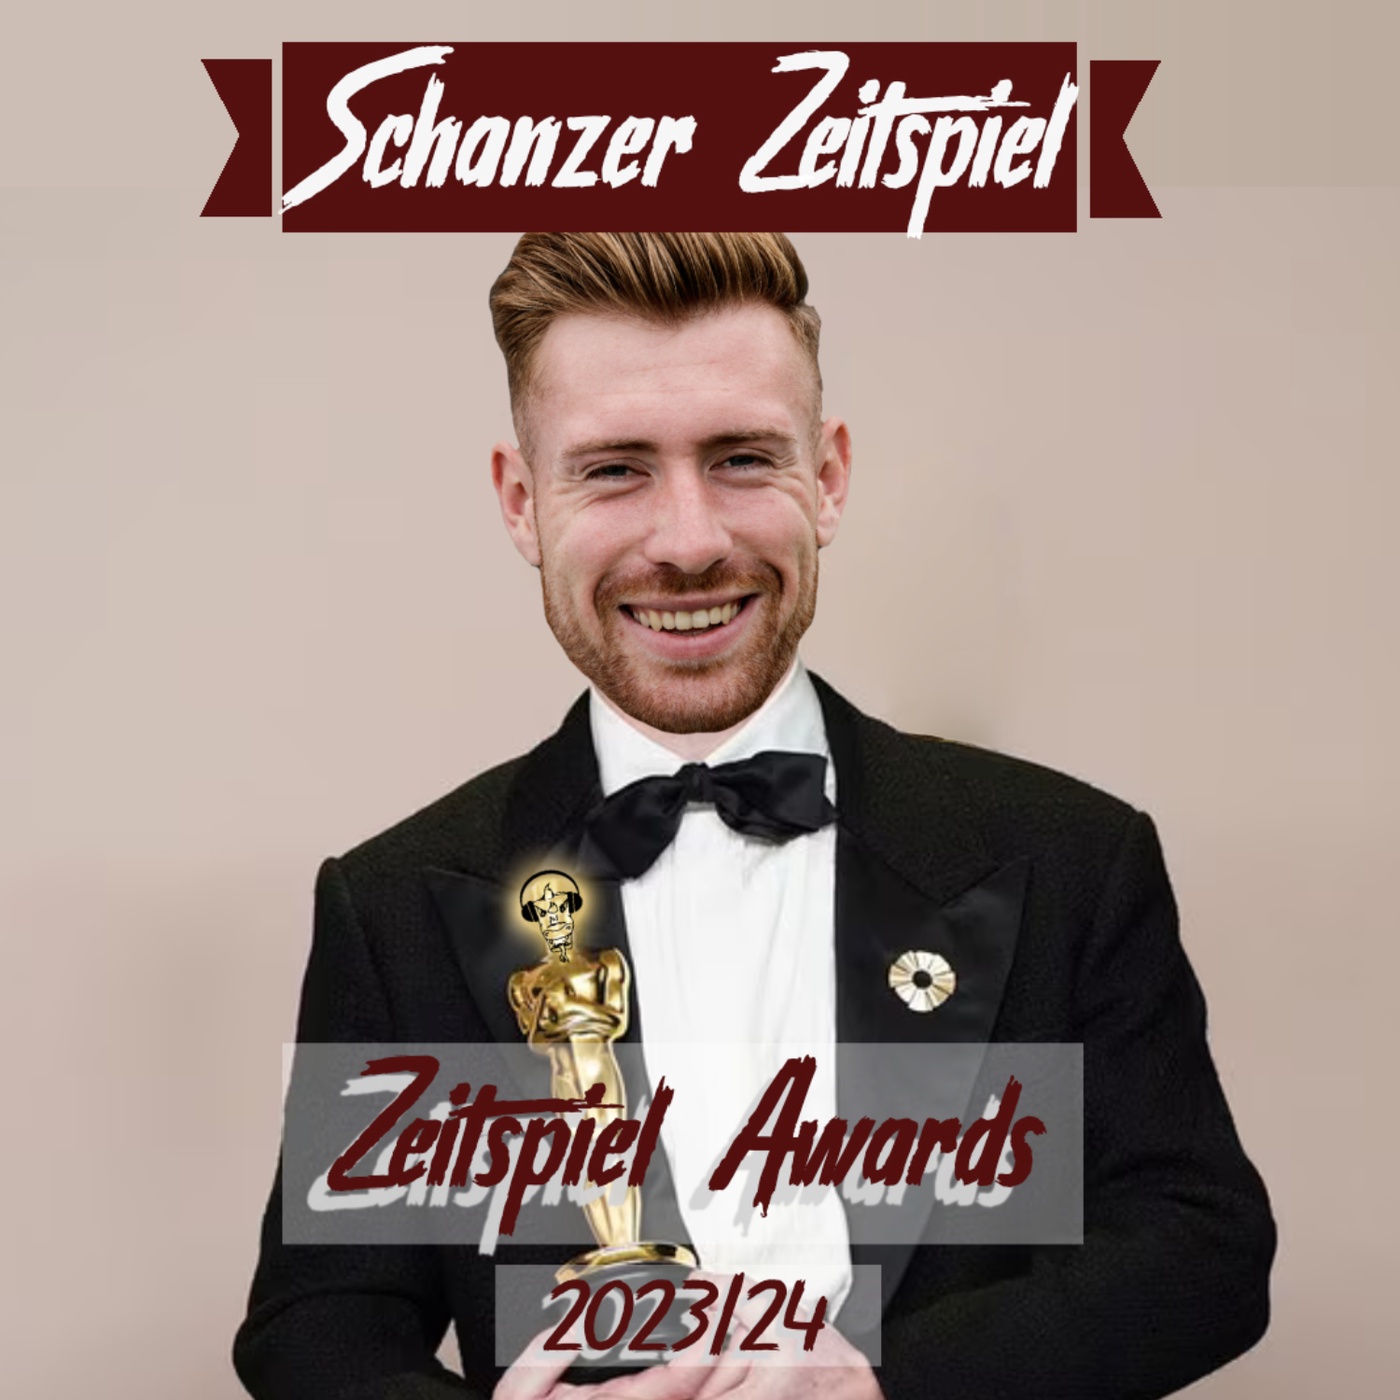 Schanzer Zeitspiel | Episode 63 | Zeitspiel Awards 2023/24